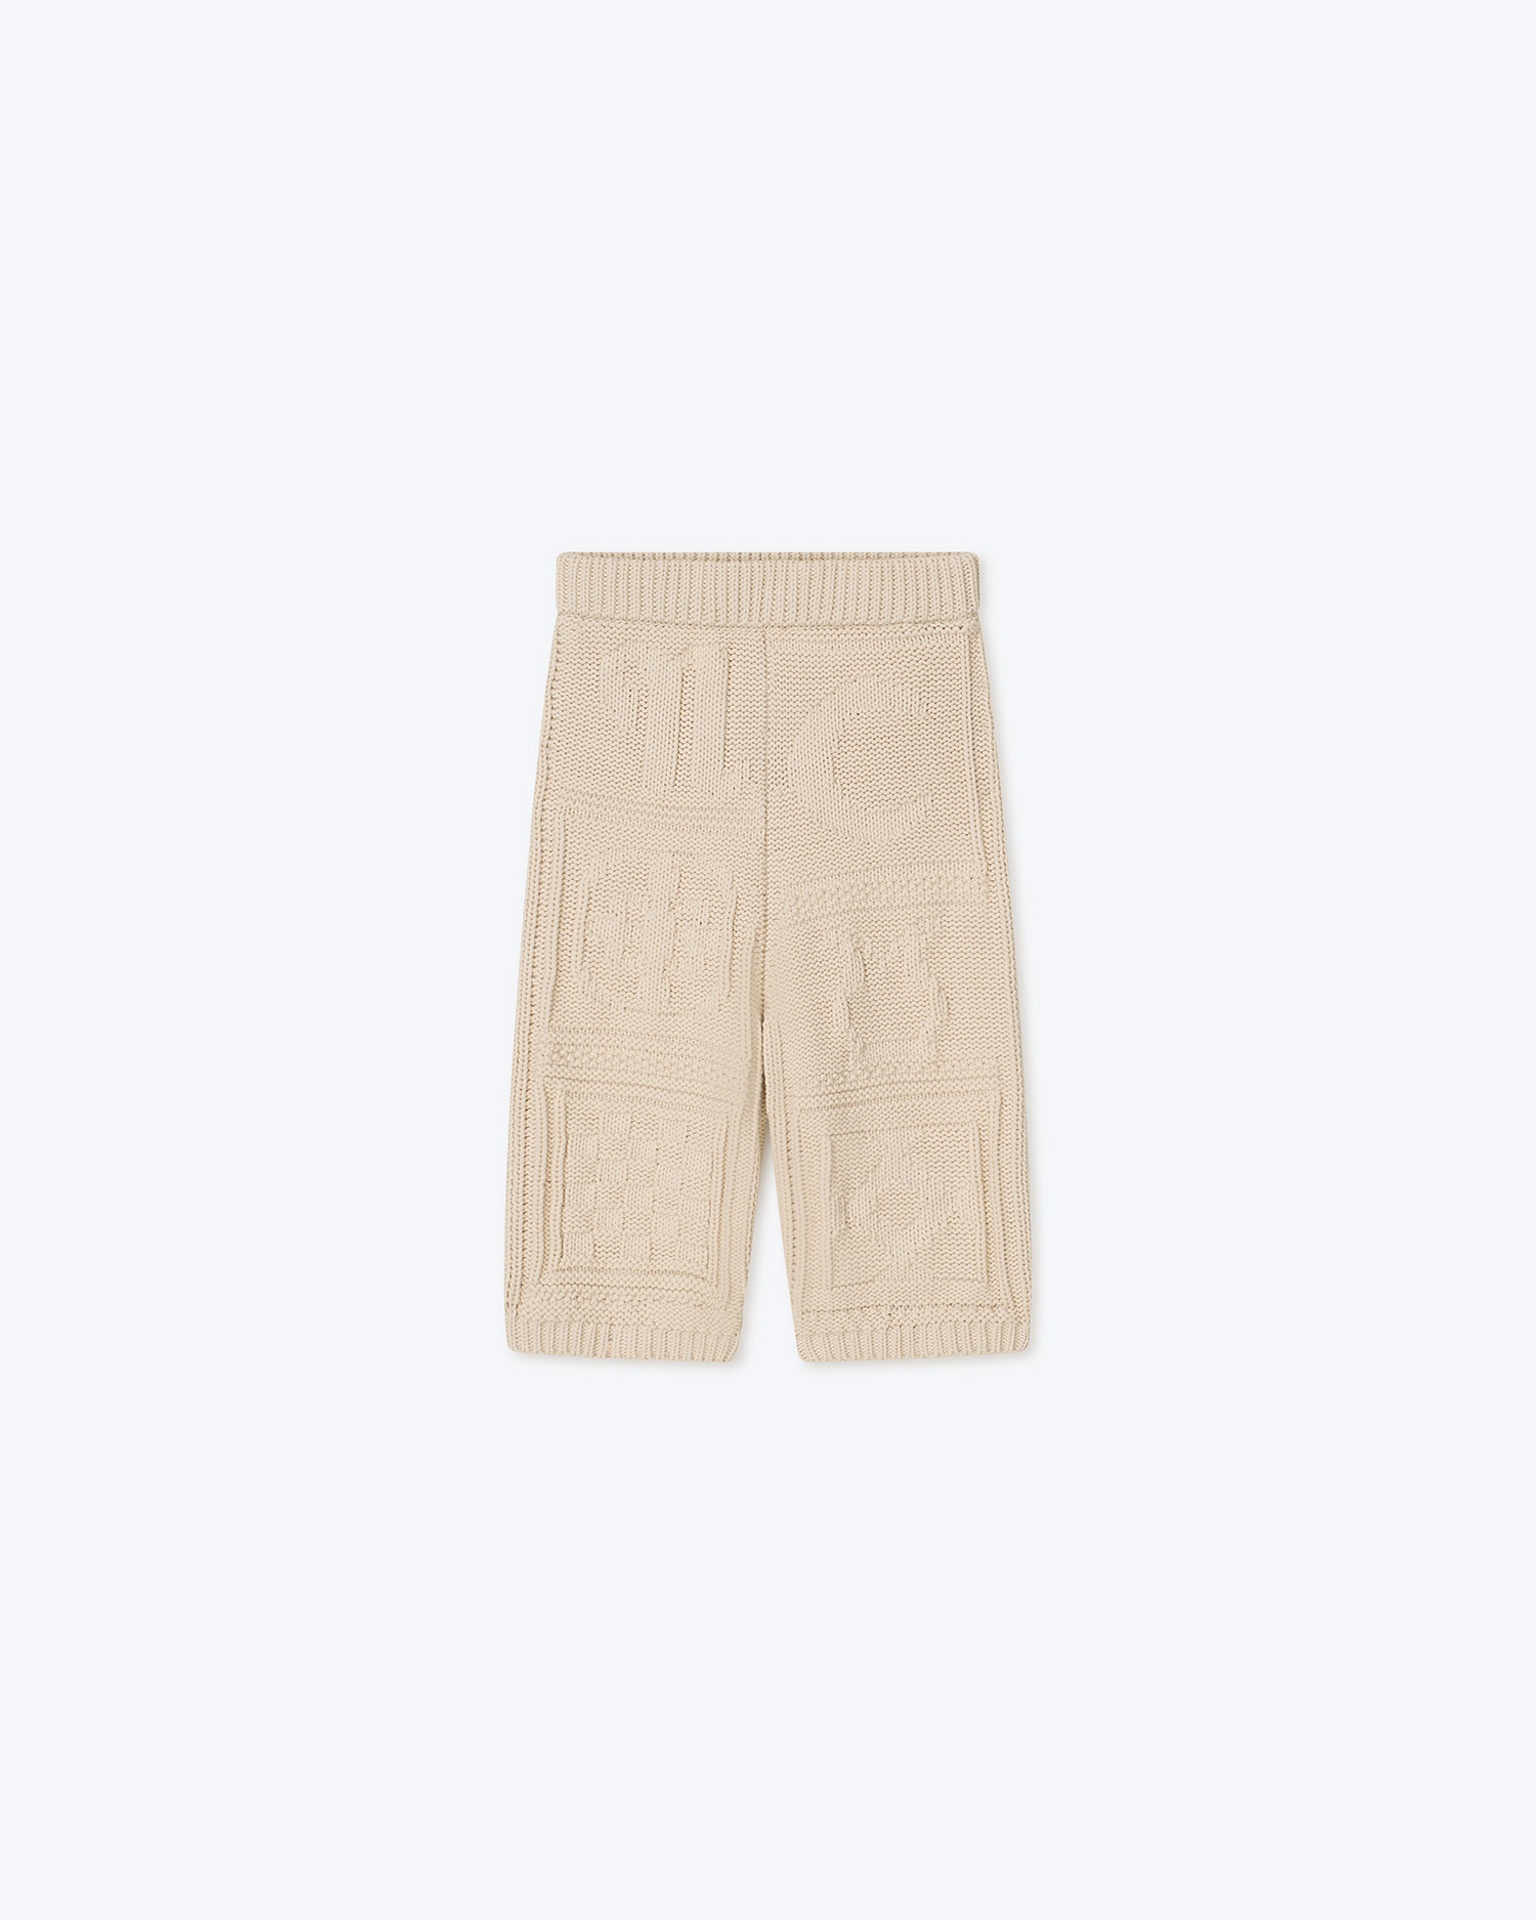 SAYA - Knitted cotton-blend shorts - Creme - 1